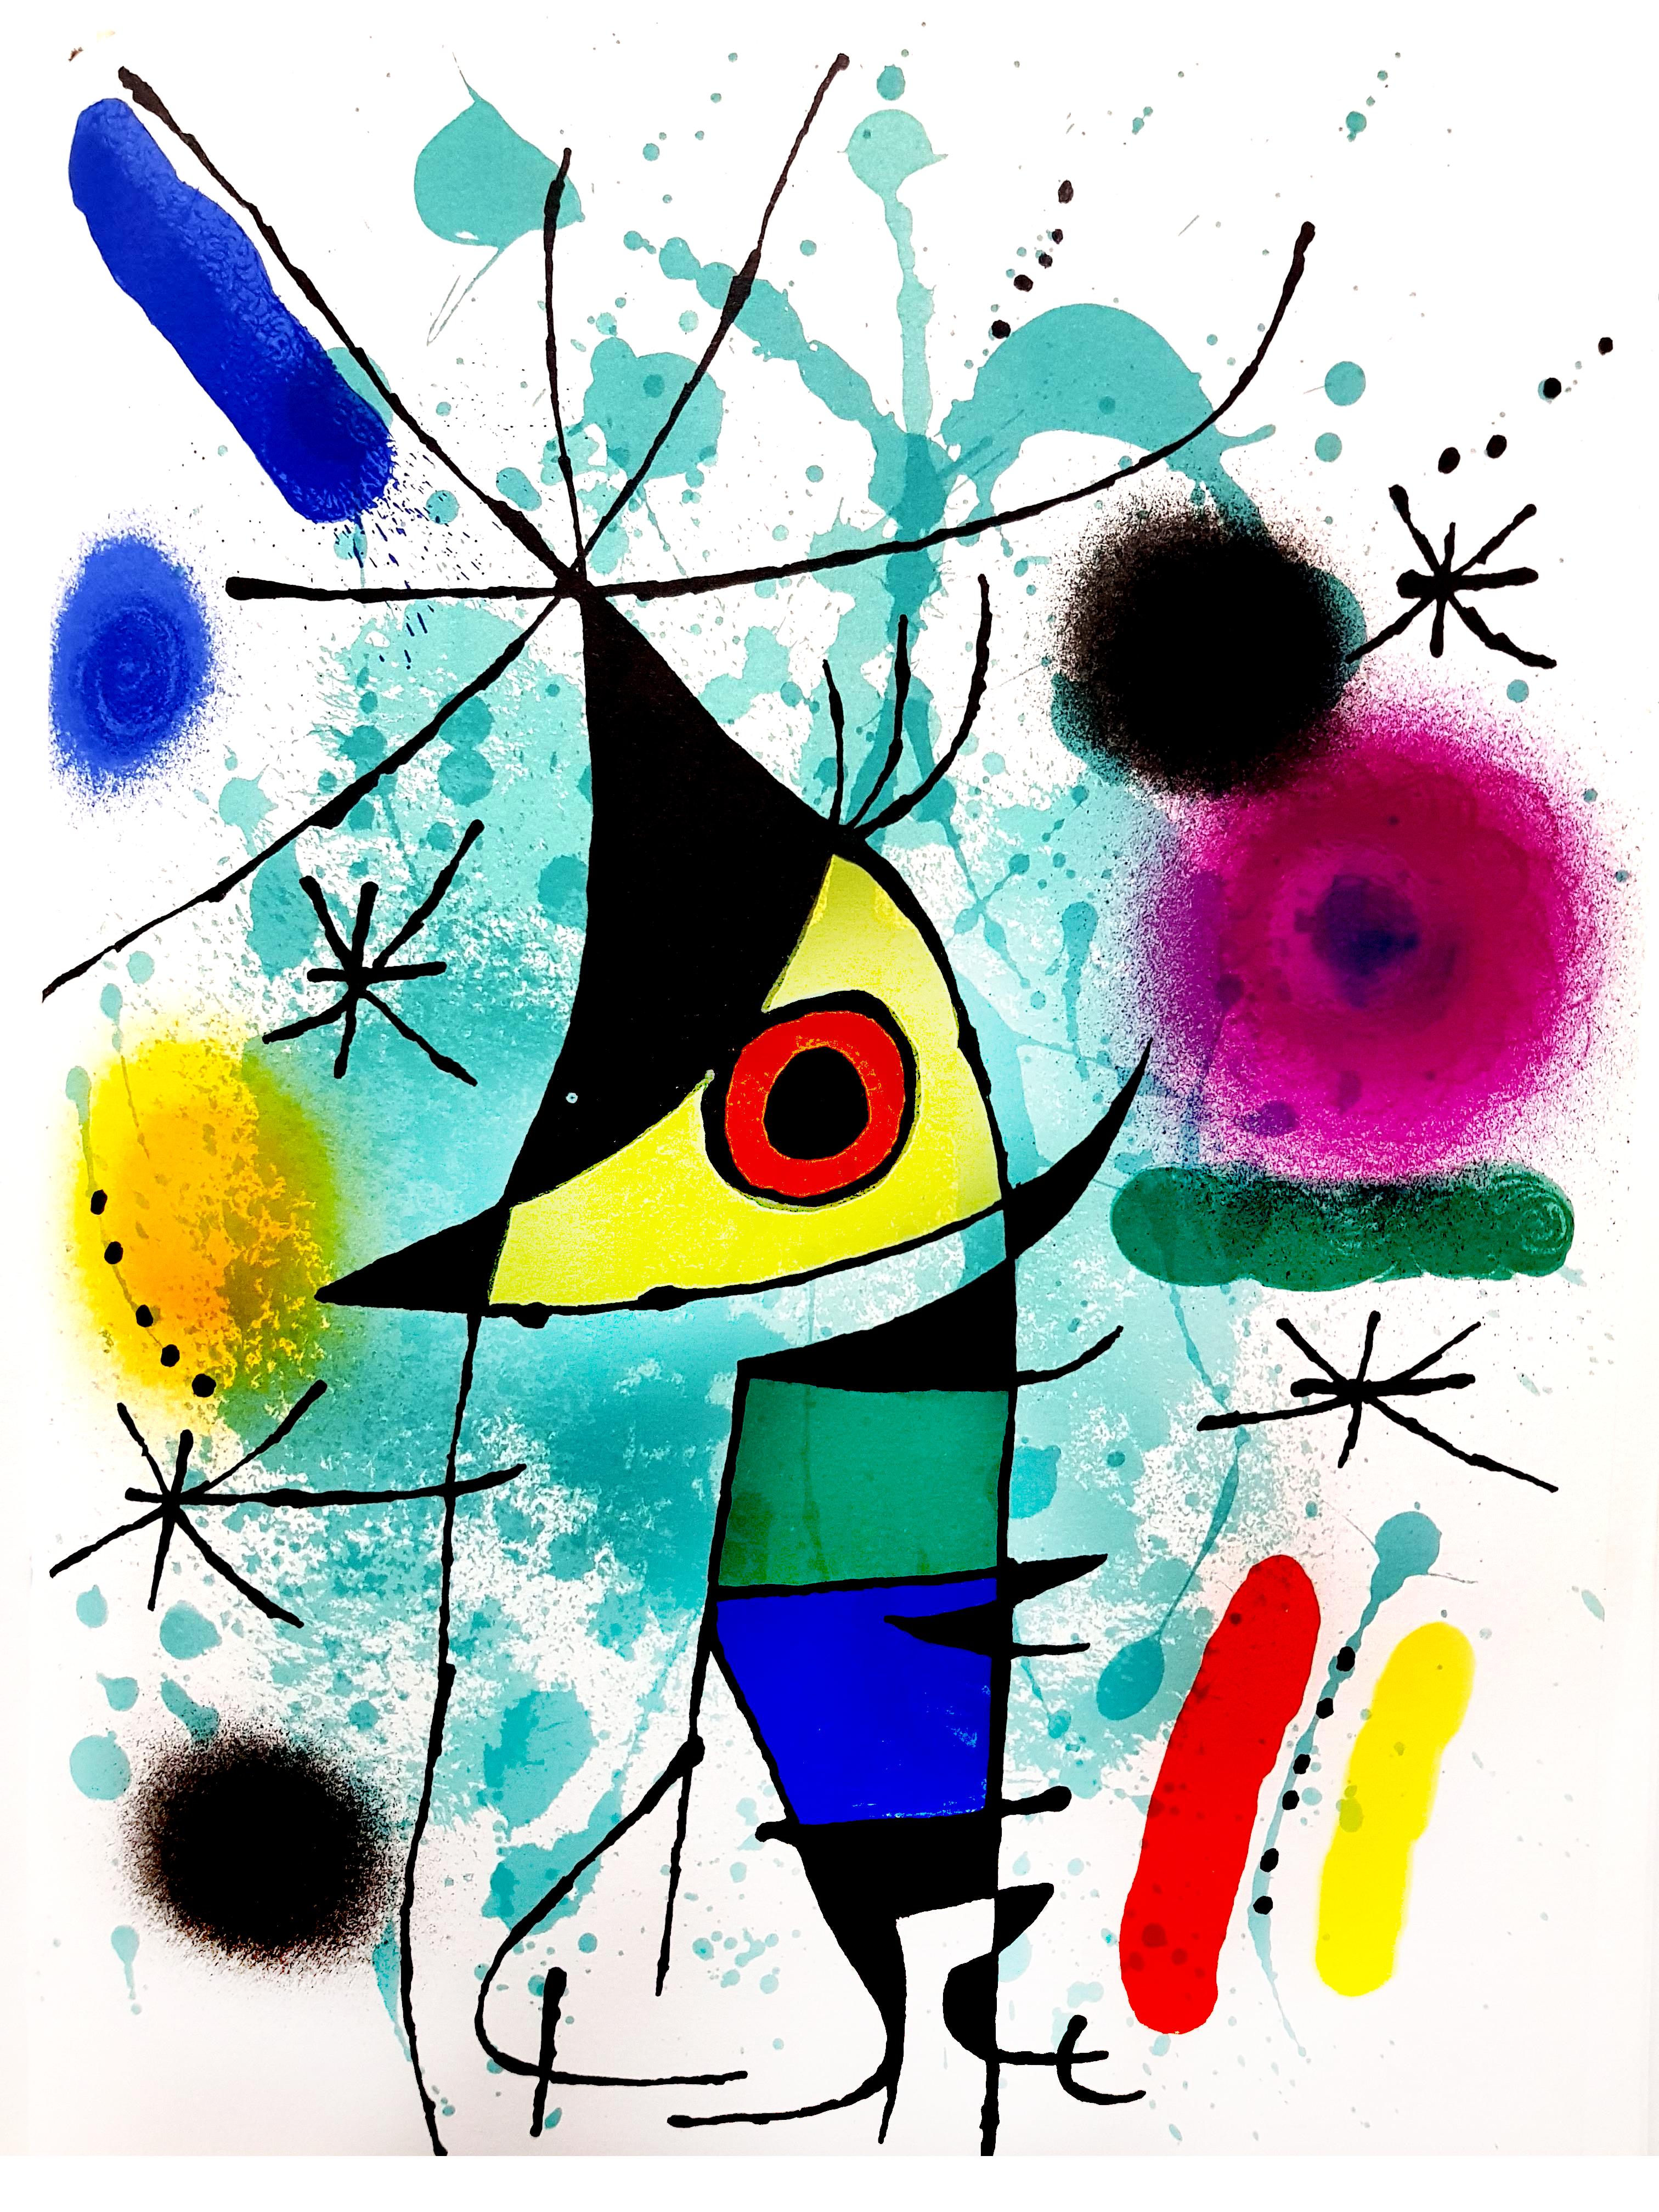 Joan Miró Abstract Print - Joan Miro - Original Abstract Lithograph